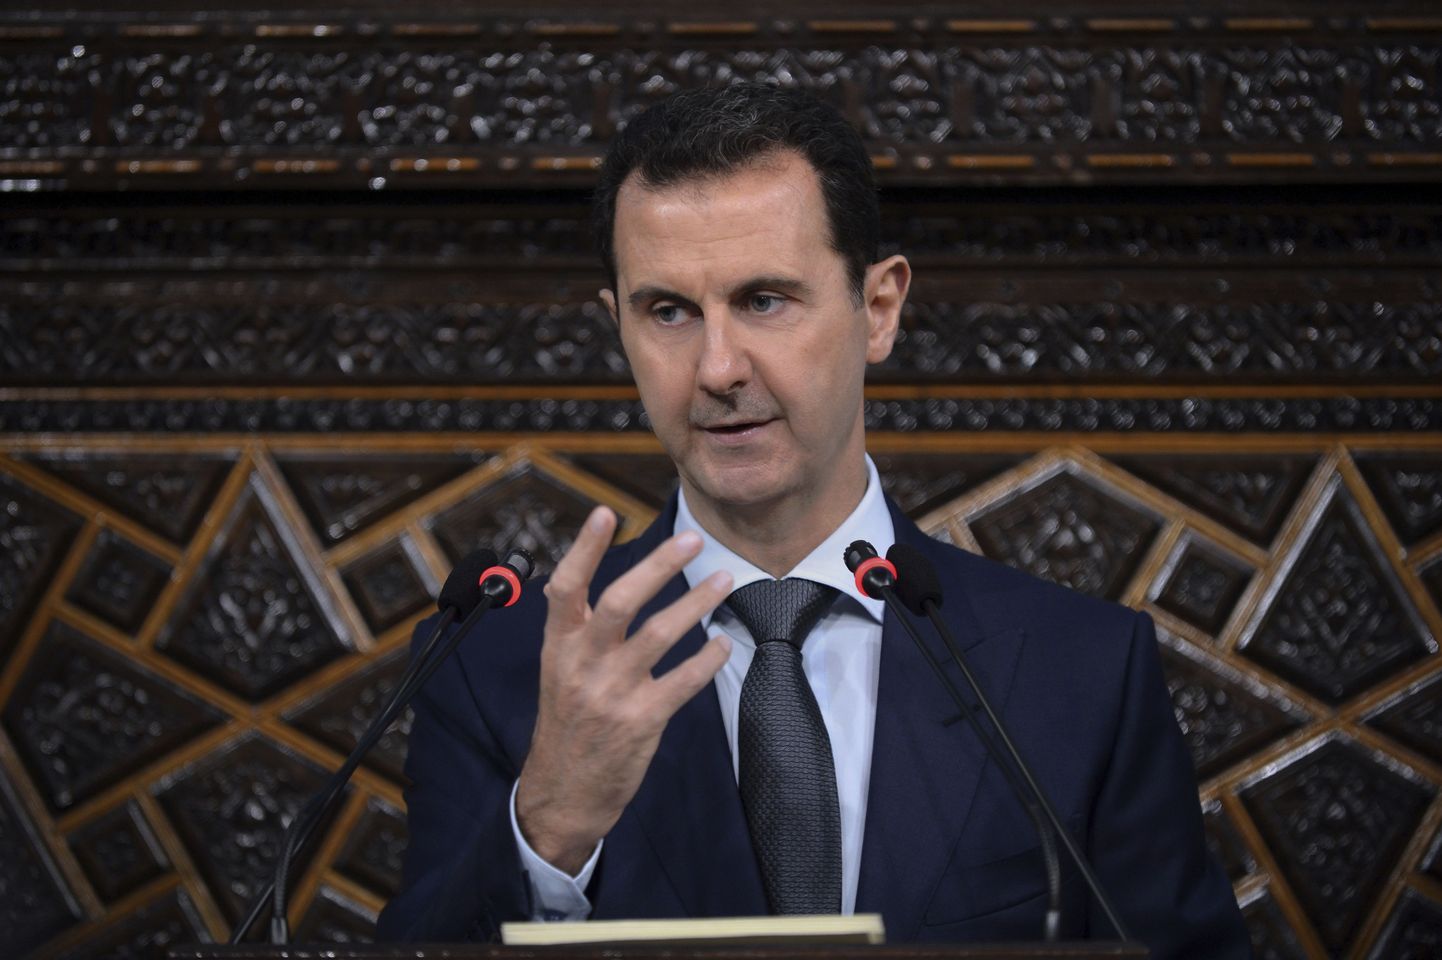 Süüria president Bashar al-Assad.